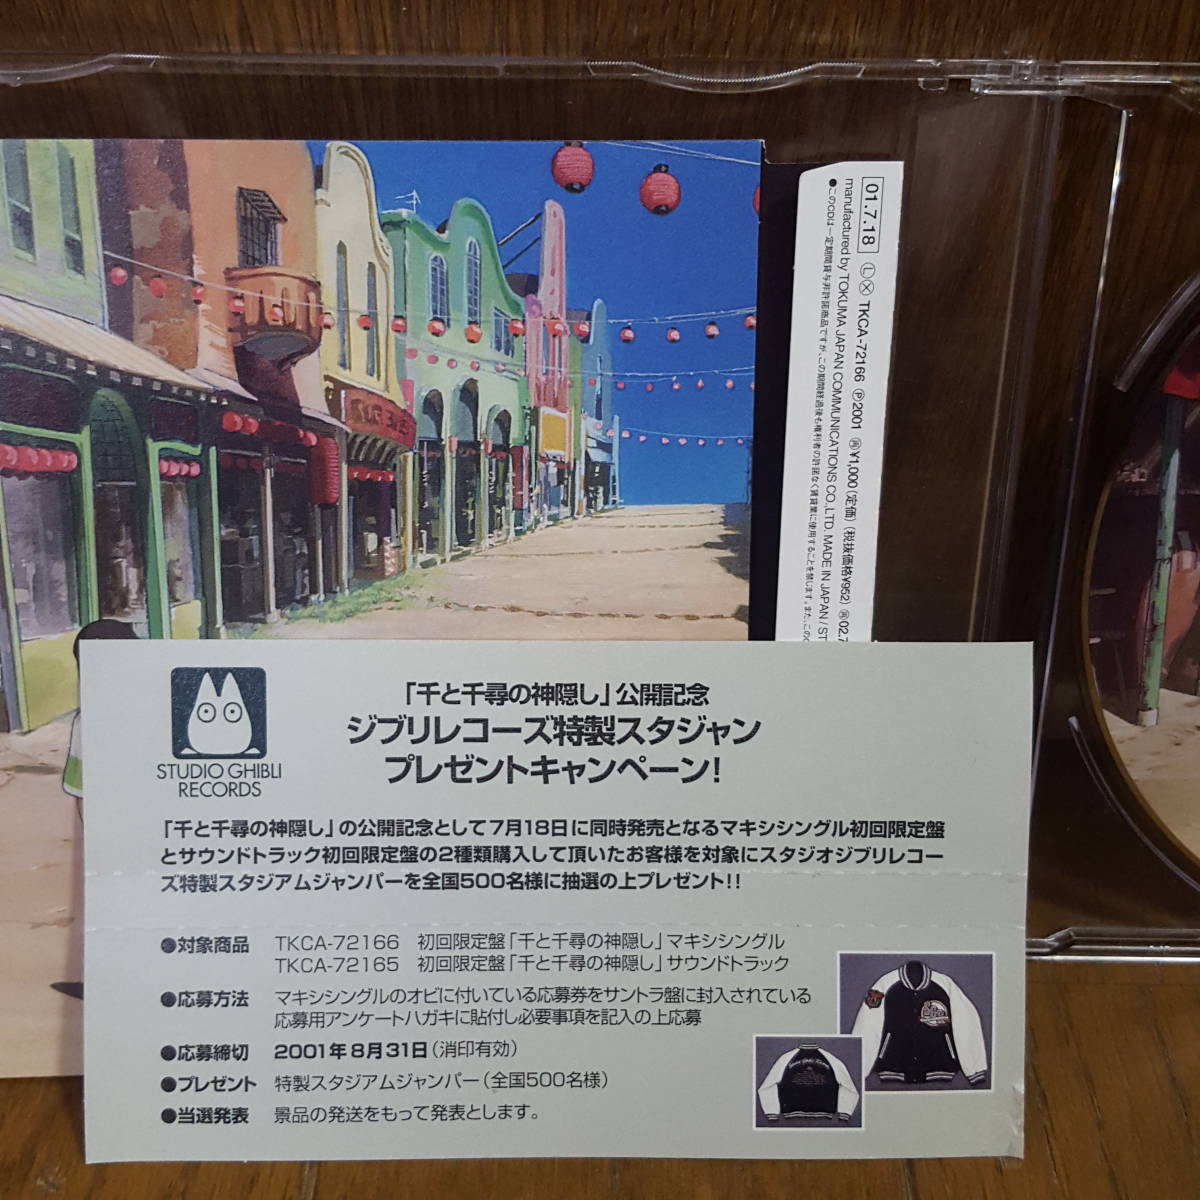 初回盤CD ピクチャーレーベル仕様 木村弓 千と千尋の神隠し いつも何度でも いのちの名前 /久石譲 宮崎駿 スタジオジブリの画像2